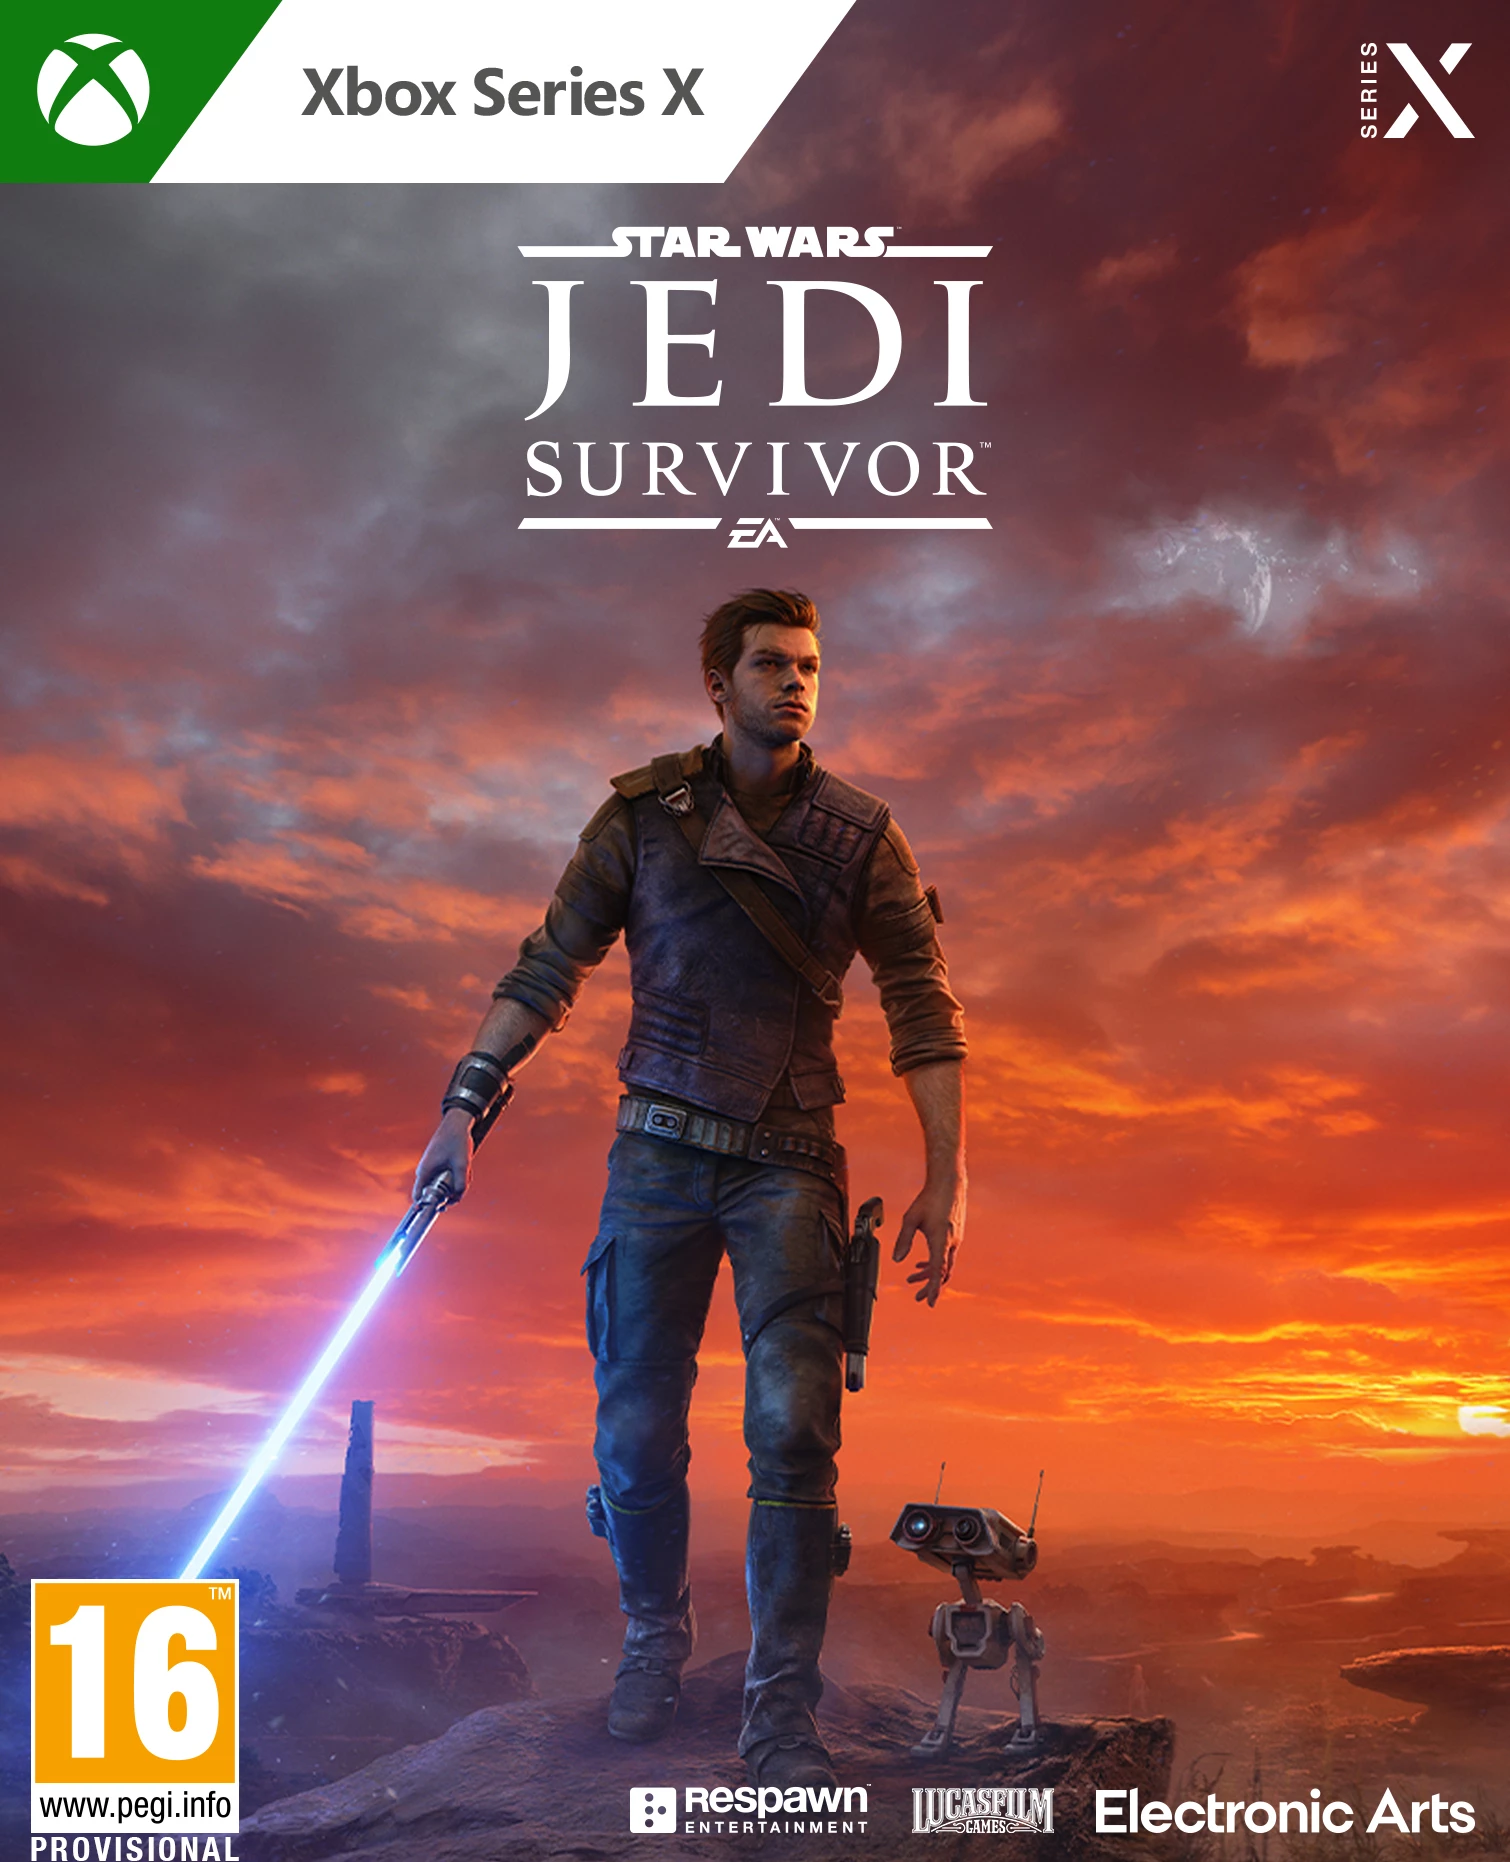 Star Wars Jedi: Survivor (Xbox Series X), Respawn Entertainment